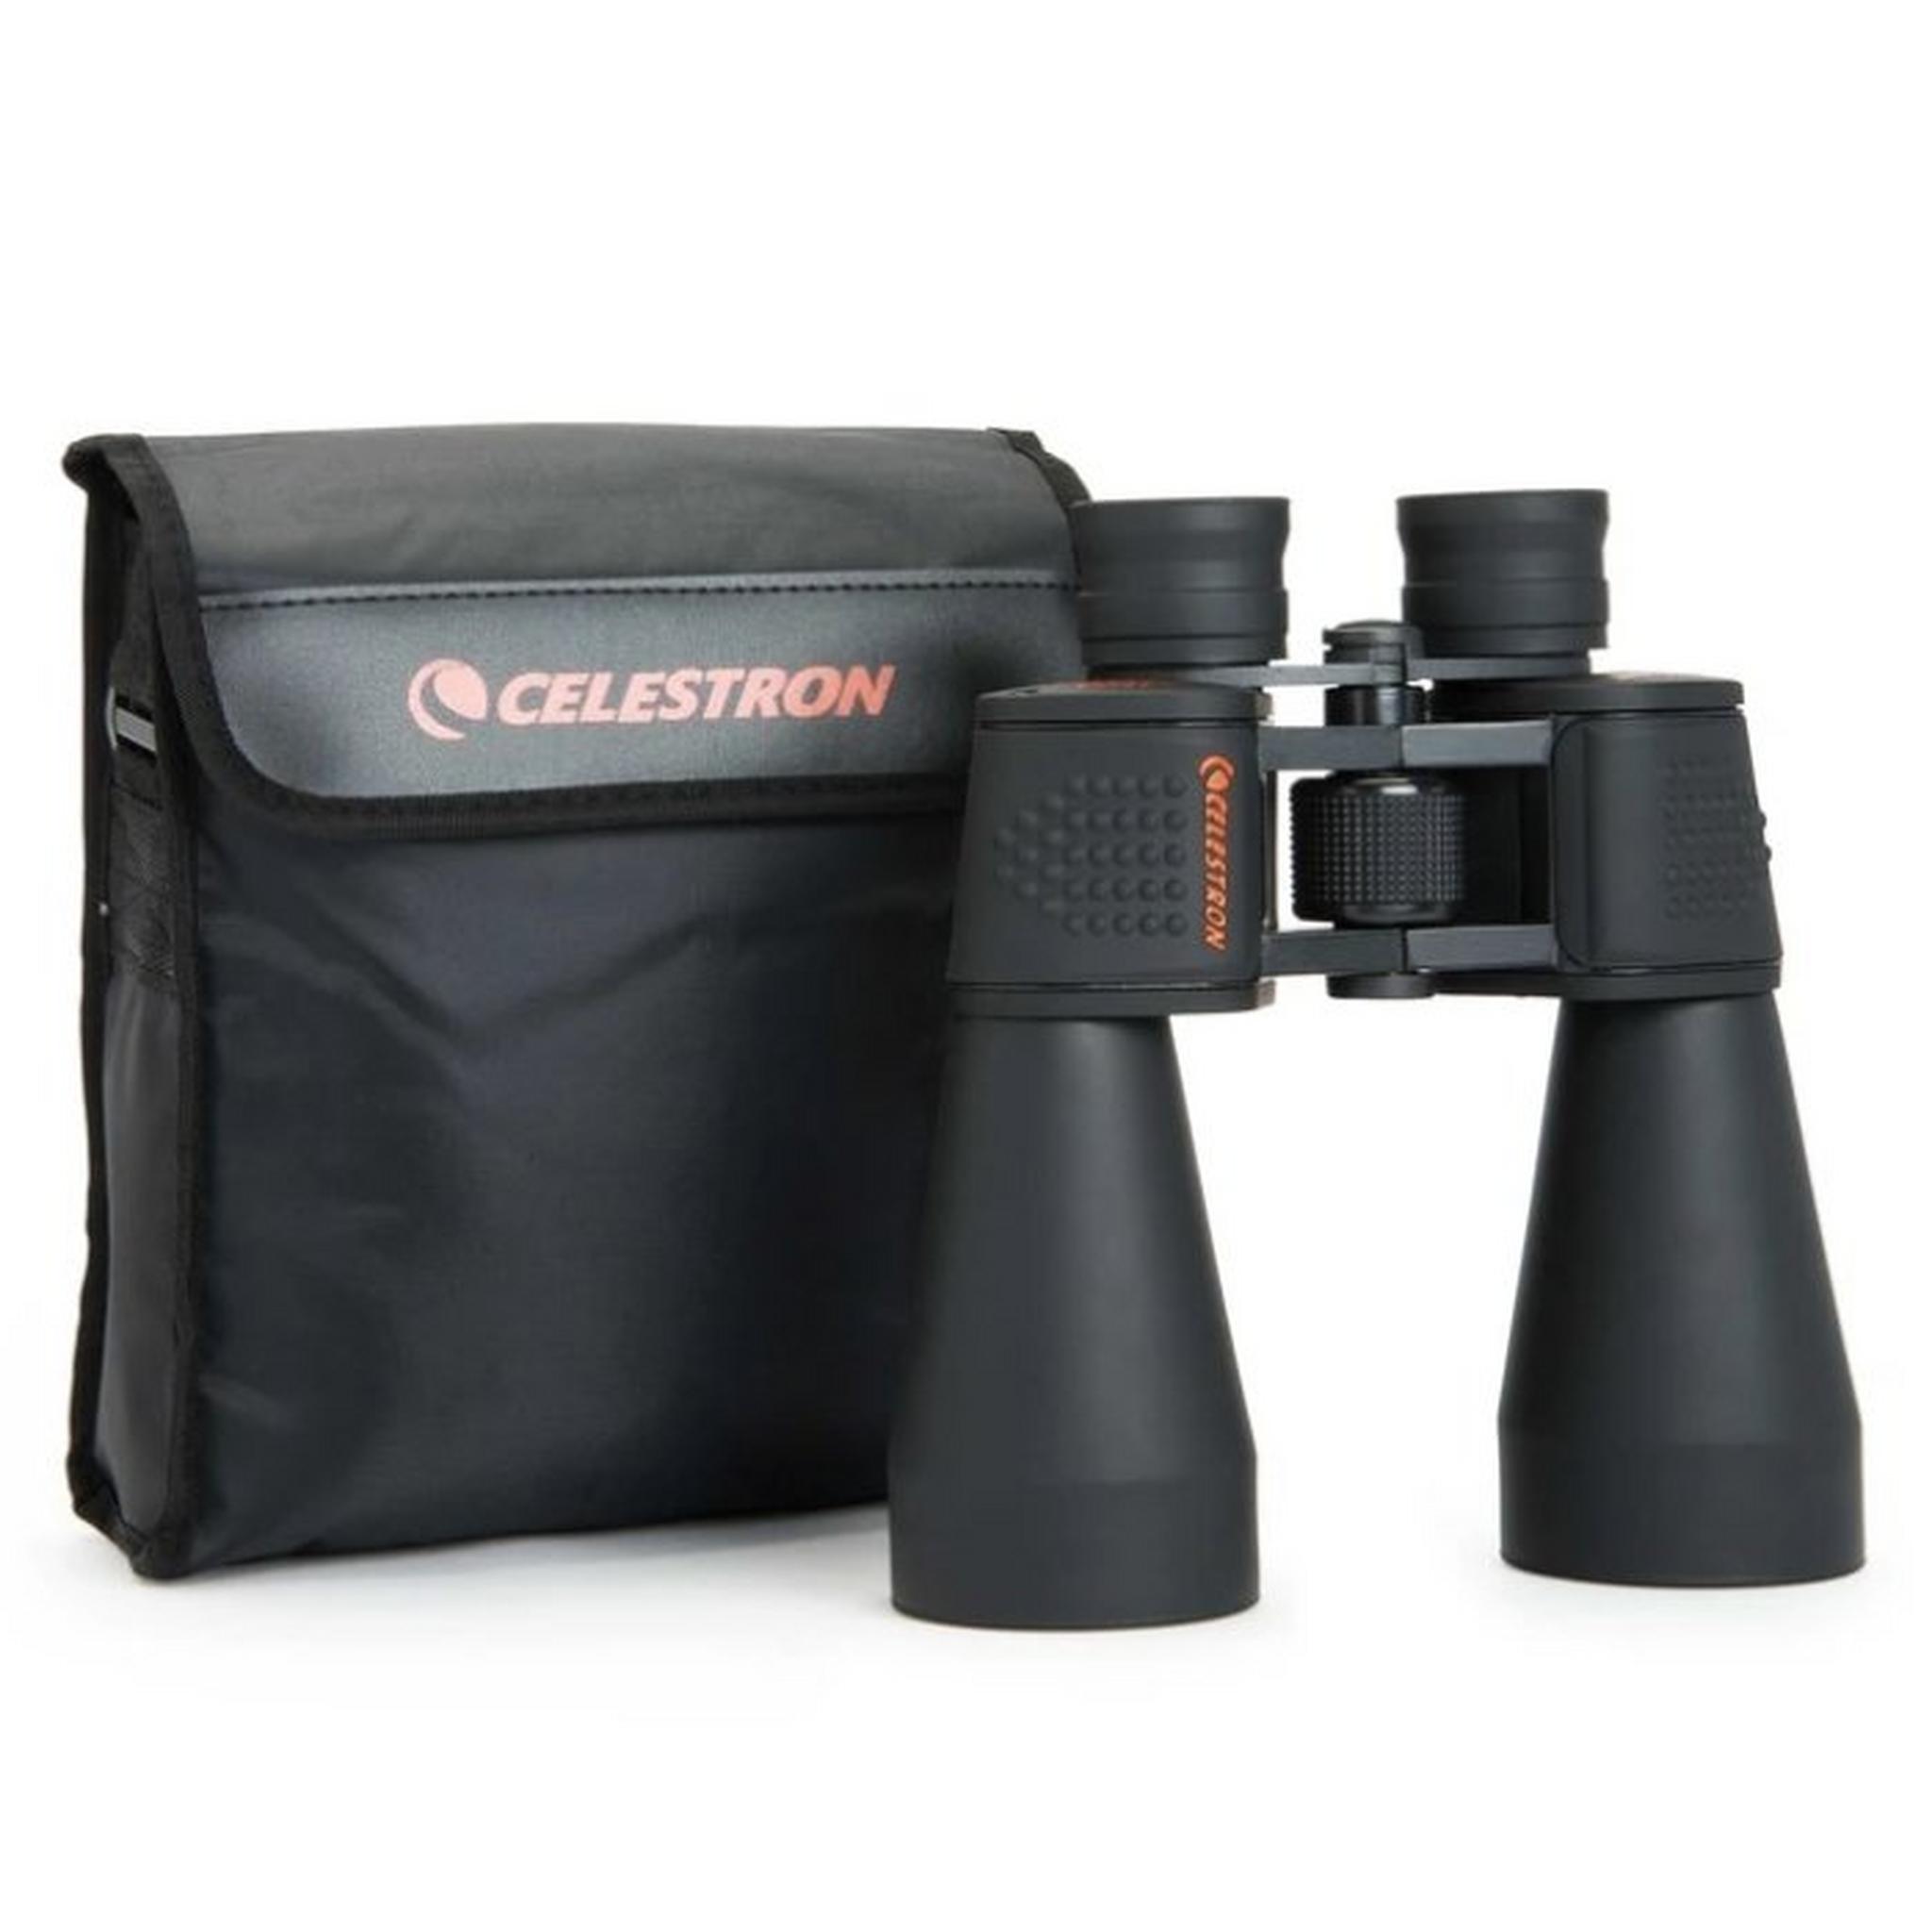 Celestron Skymaster 12x60 Binoculars